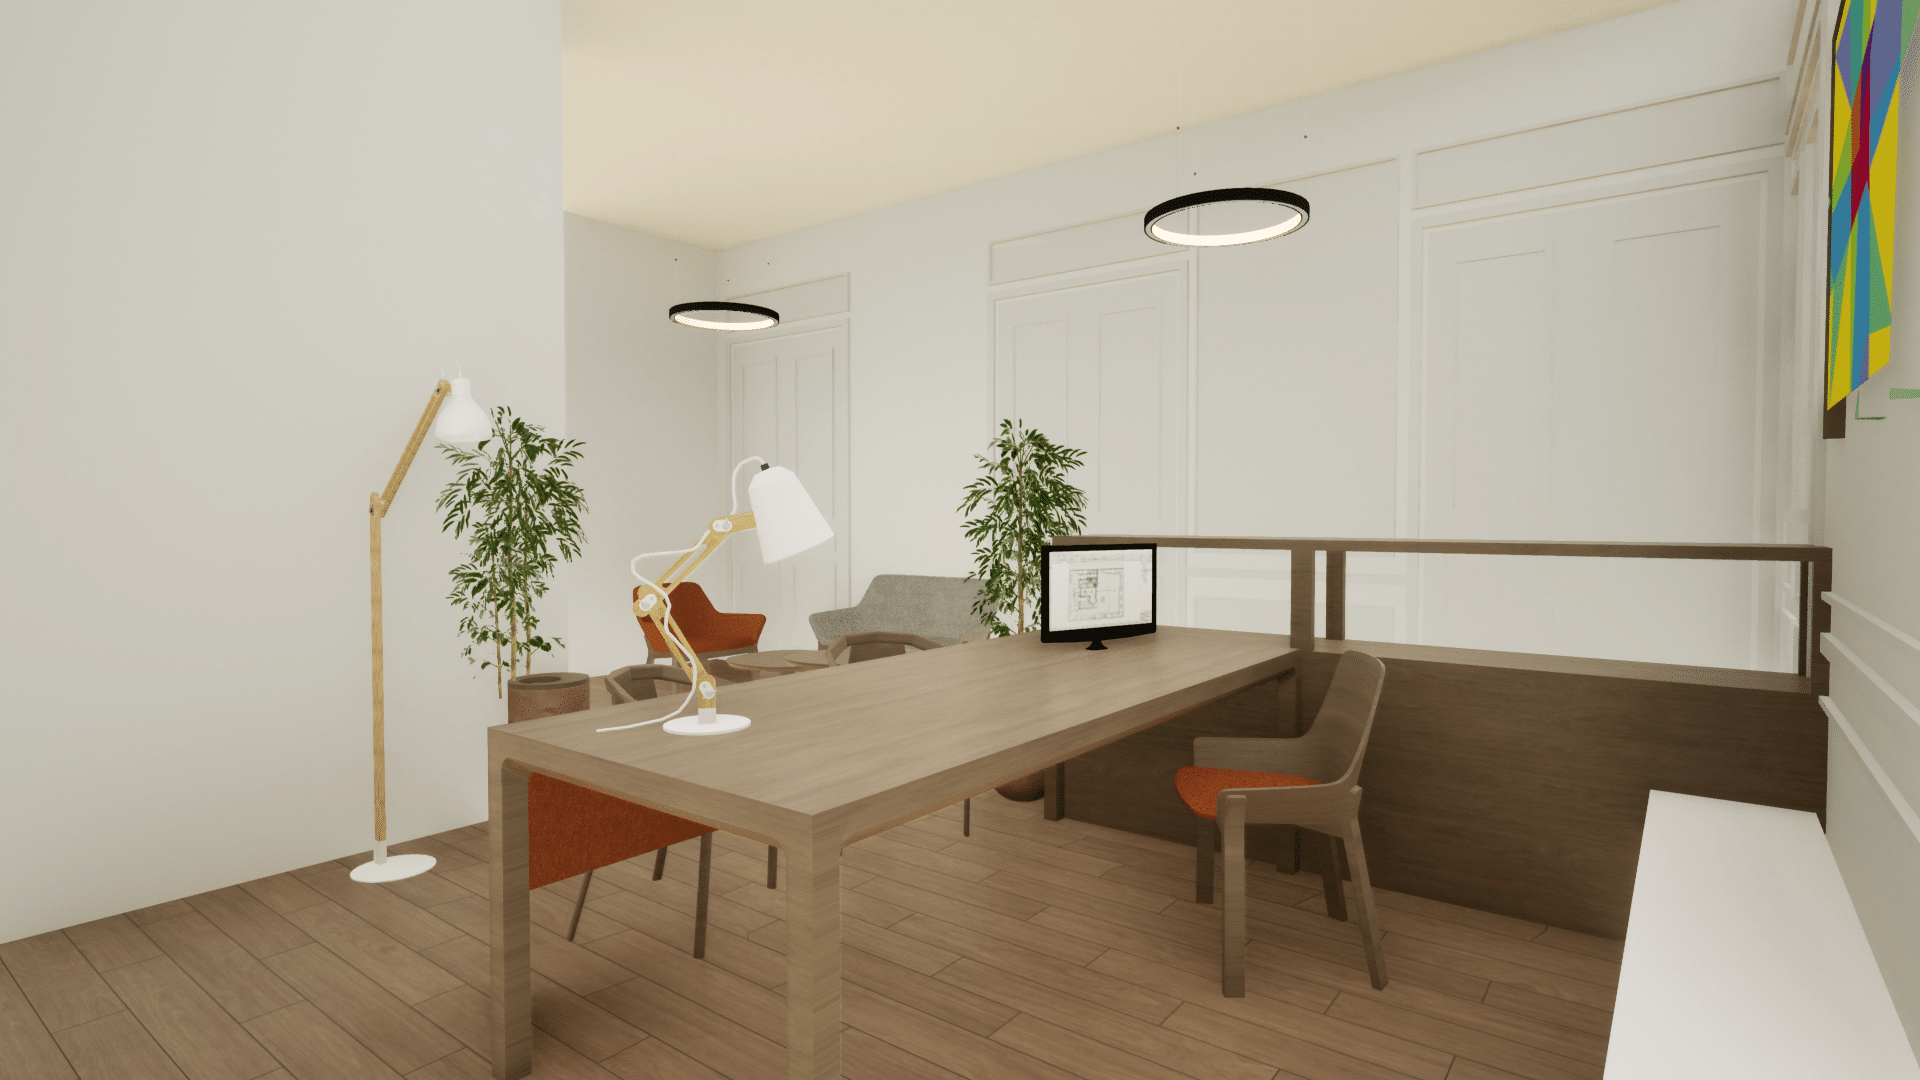 Rénovation de bureaux : perspective 3D du Projet d'Espace Accueil côté rue vue bureau secrétariat